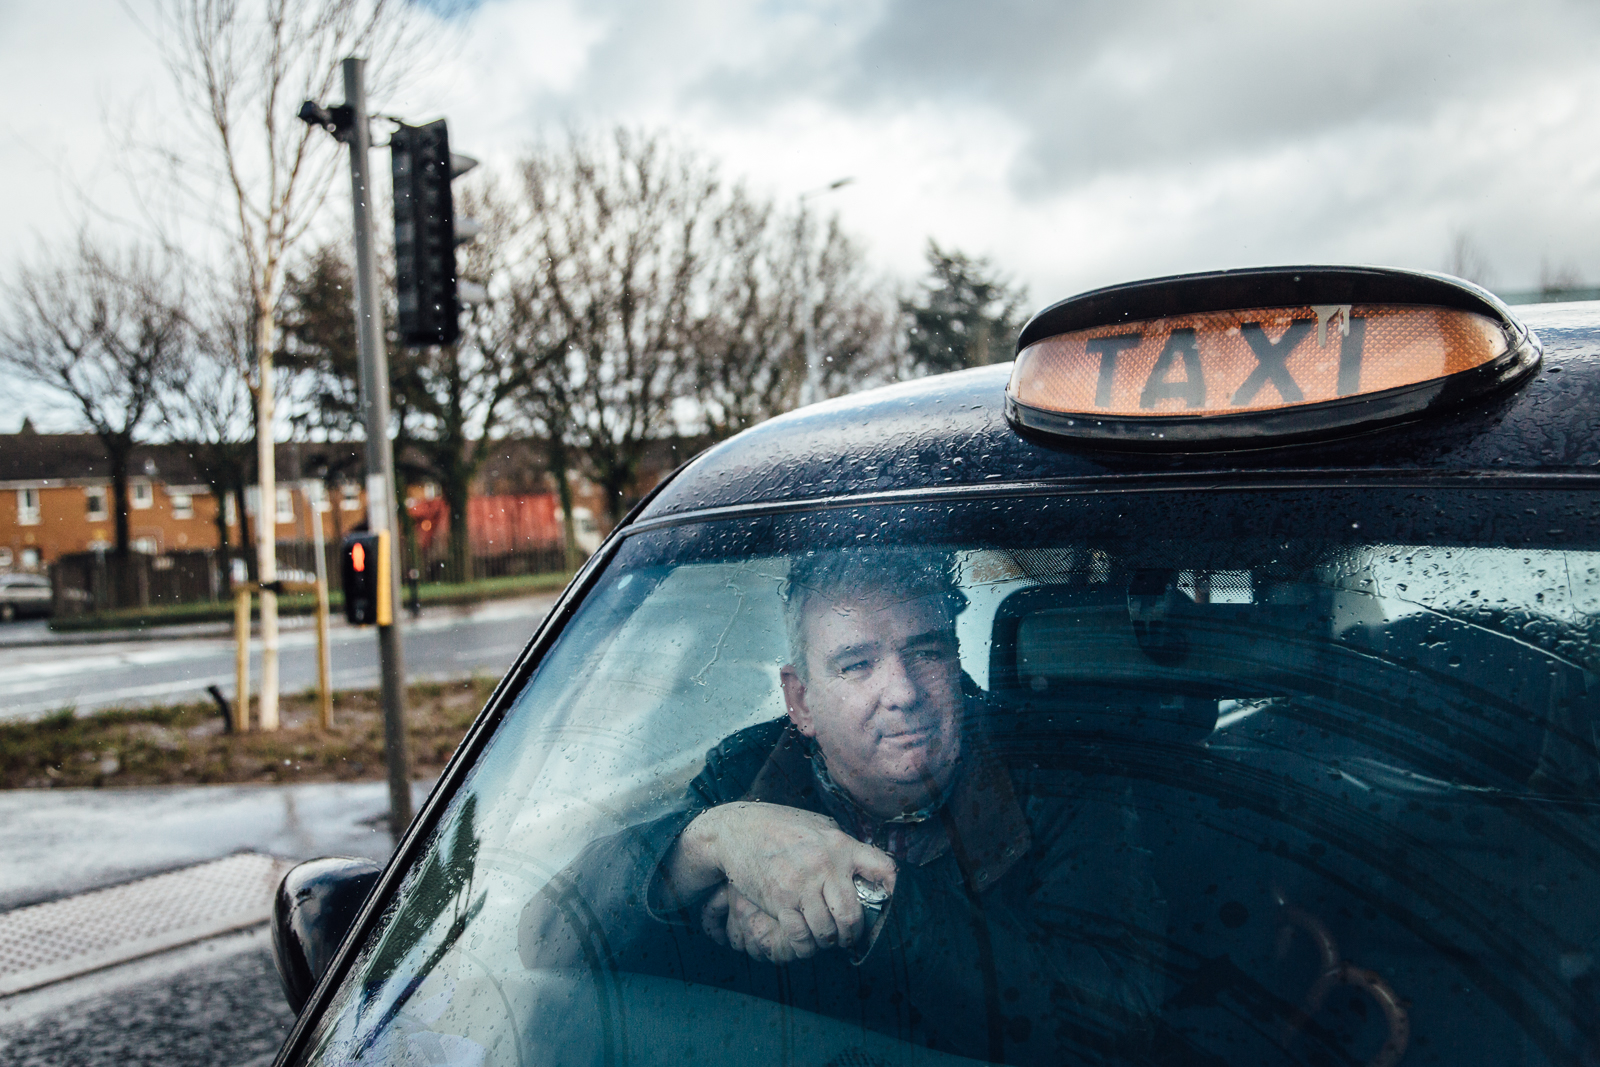 Belfast, le 23 Février 2017. Les fameux "black cabs", taxi emblématiques de Belfast sont souvent conduits par des anciens membres de l'IRA. Depuis les accords de paix, ils font visiter aux touristes les lieux représentatifs des "troubles".